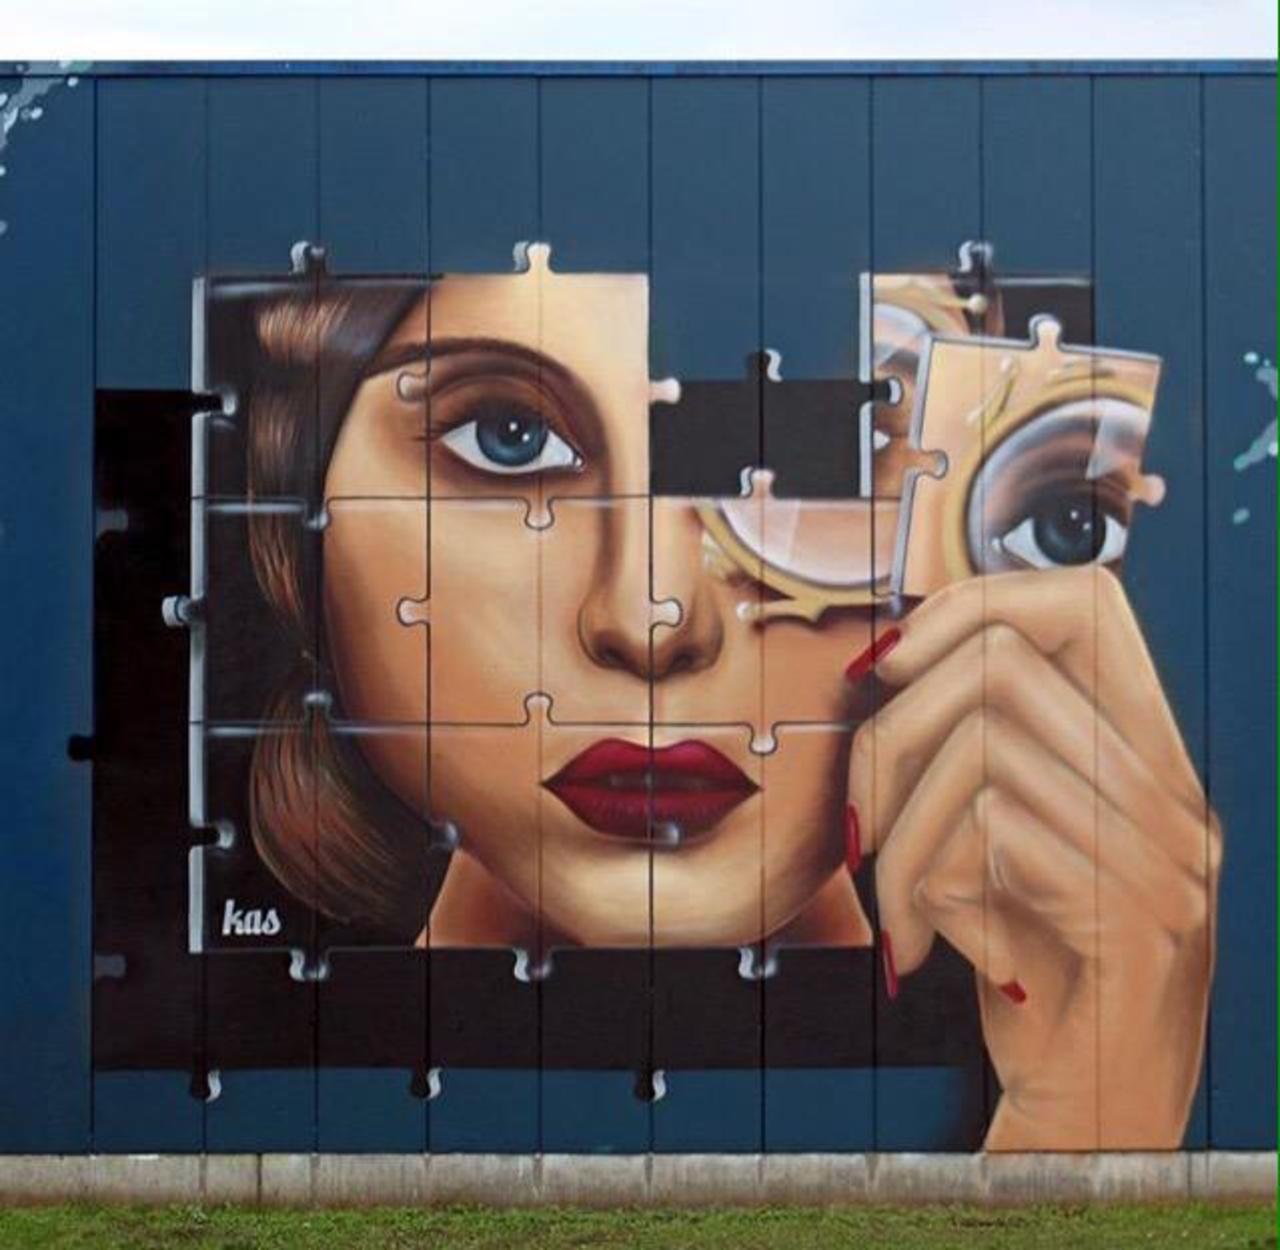 Kas Art's new Street Art "Piece of me" in Aalst Belgium 

#art #graffiti #mural #streetart http://t.co/YJtUY4DGn4